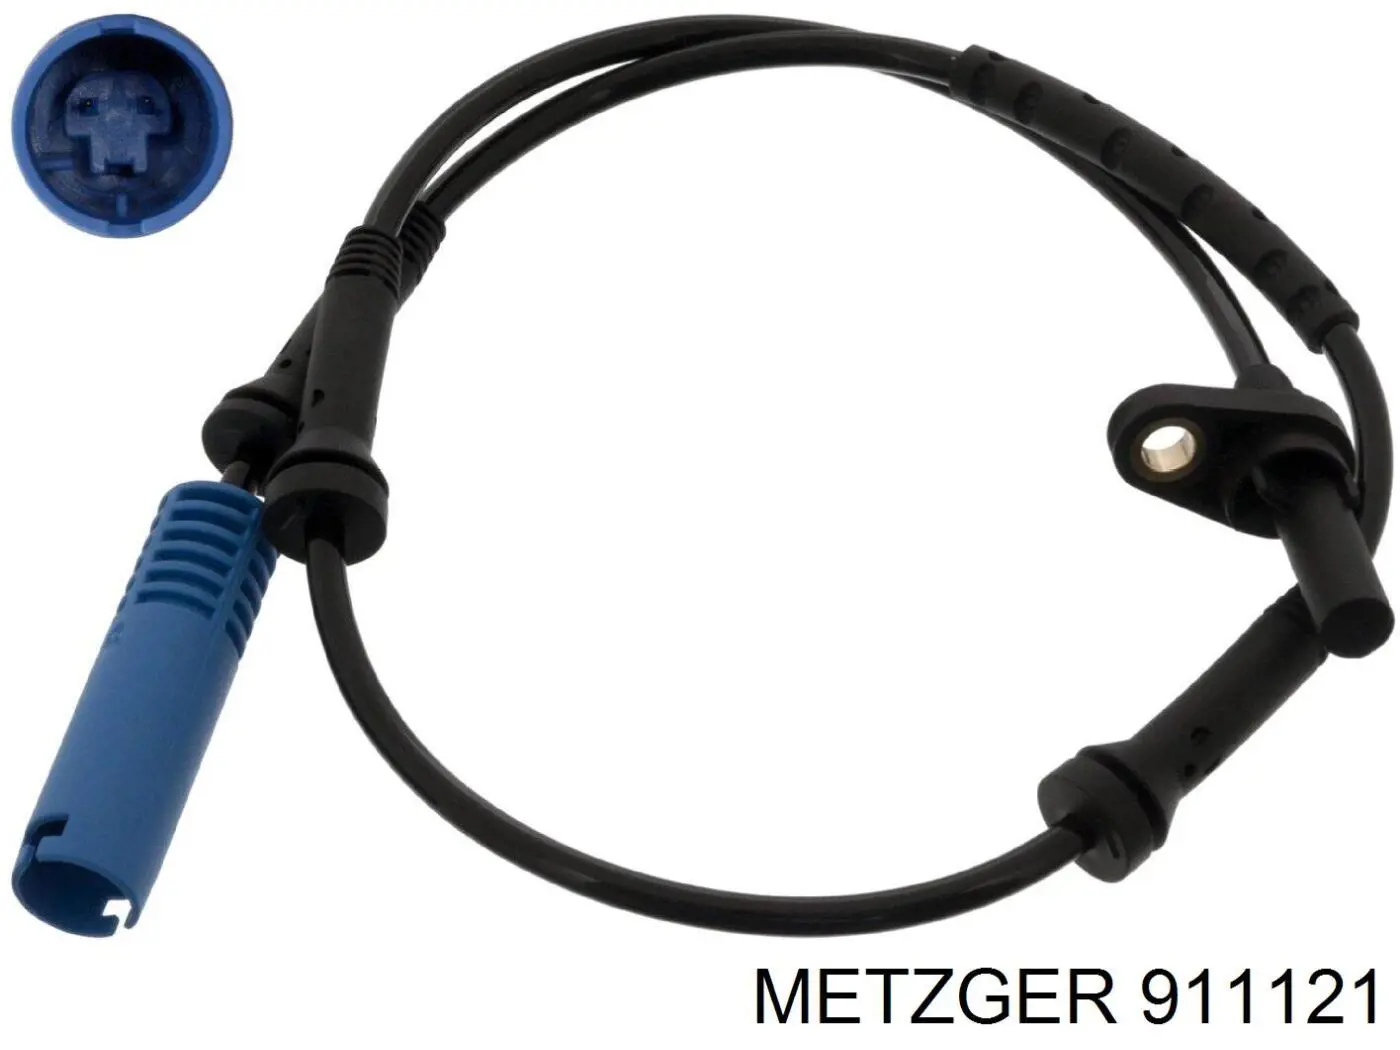 911121 Metzger interruptor luz de freno